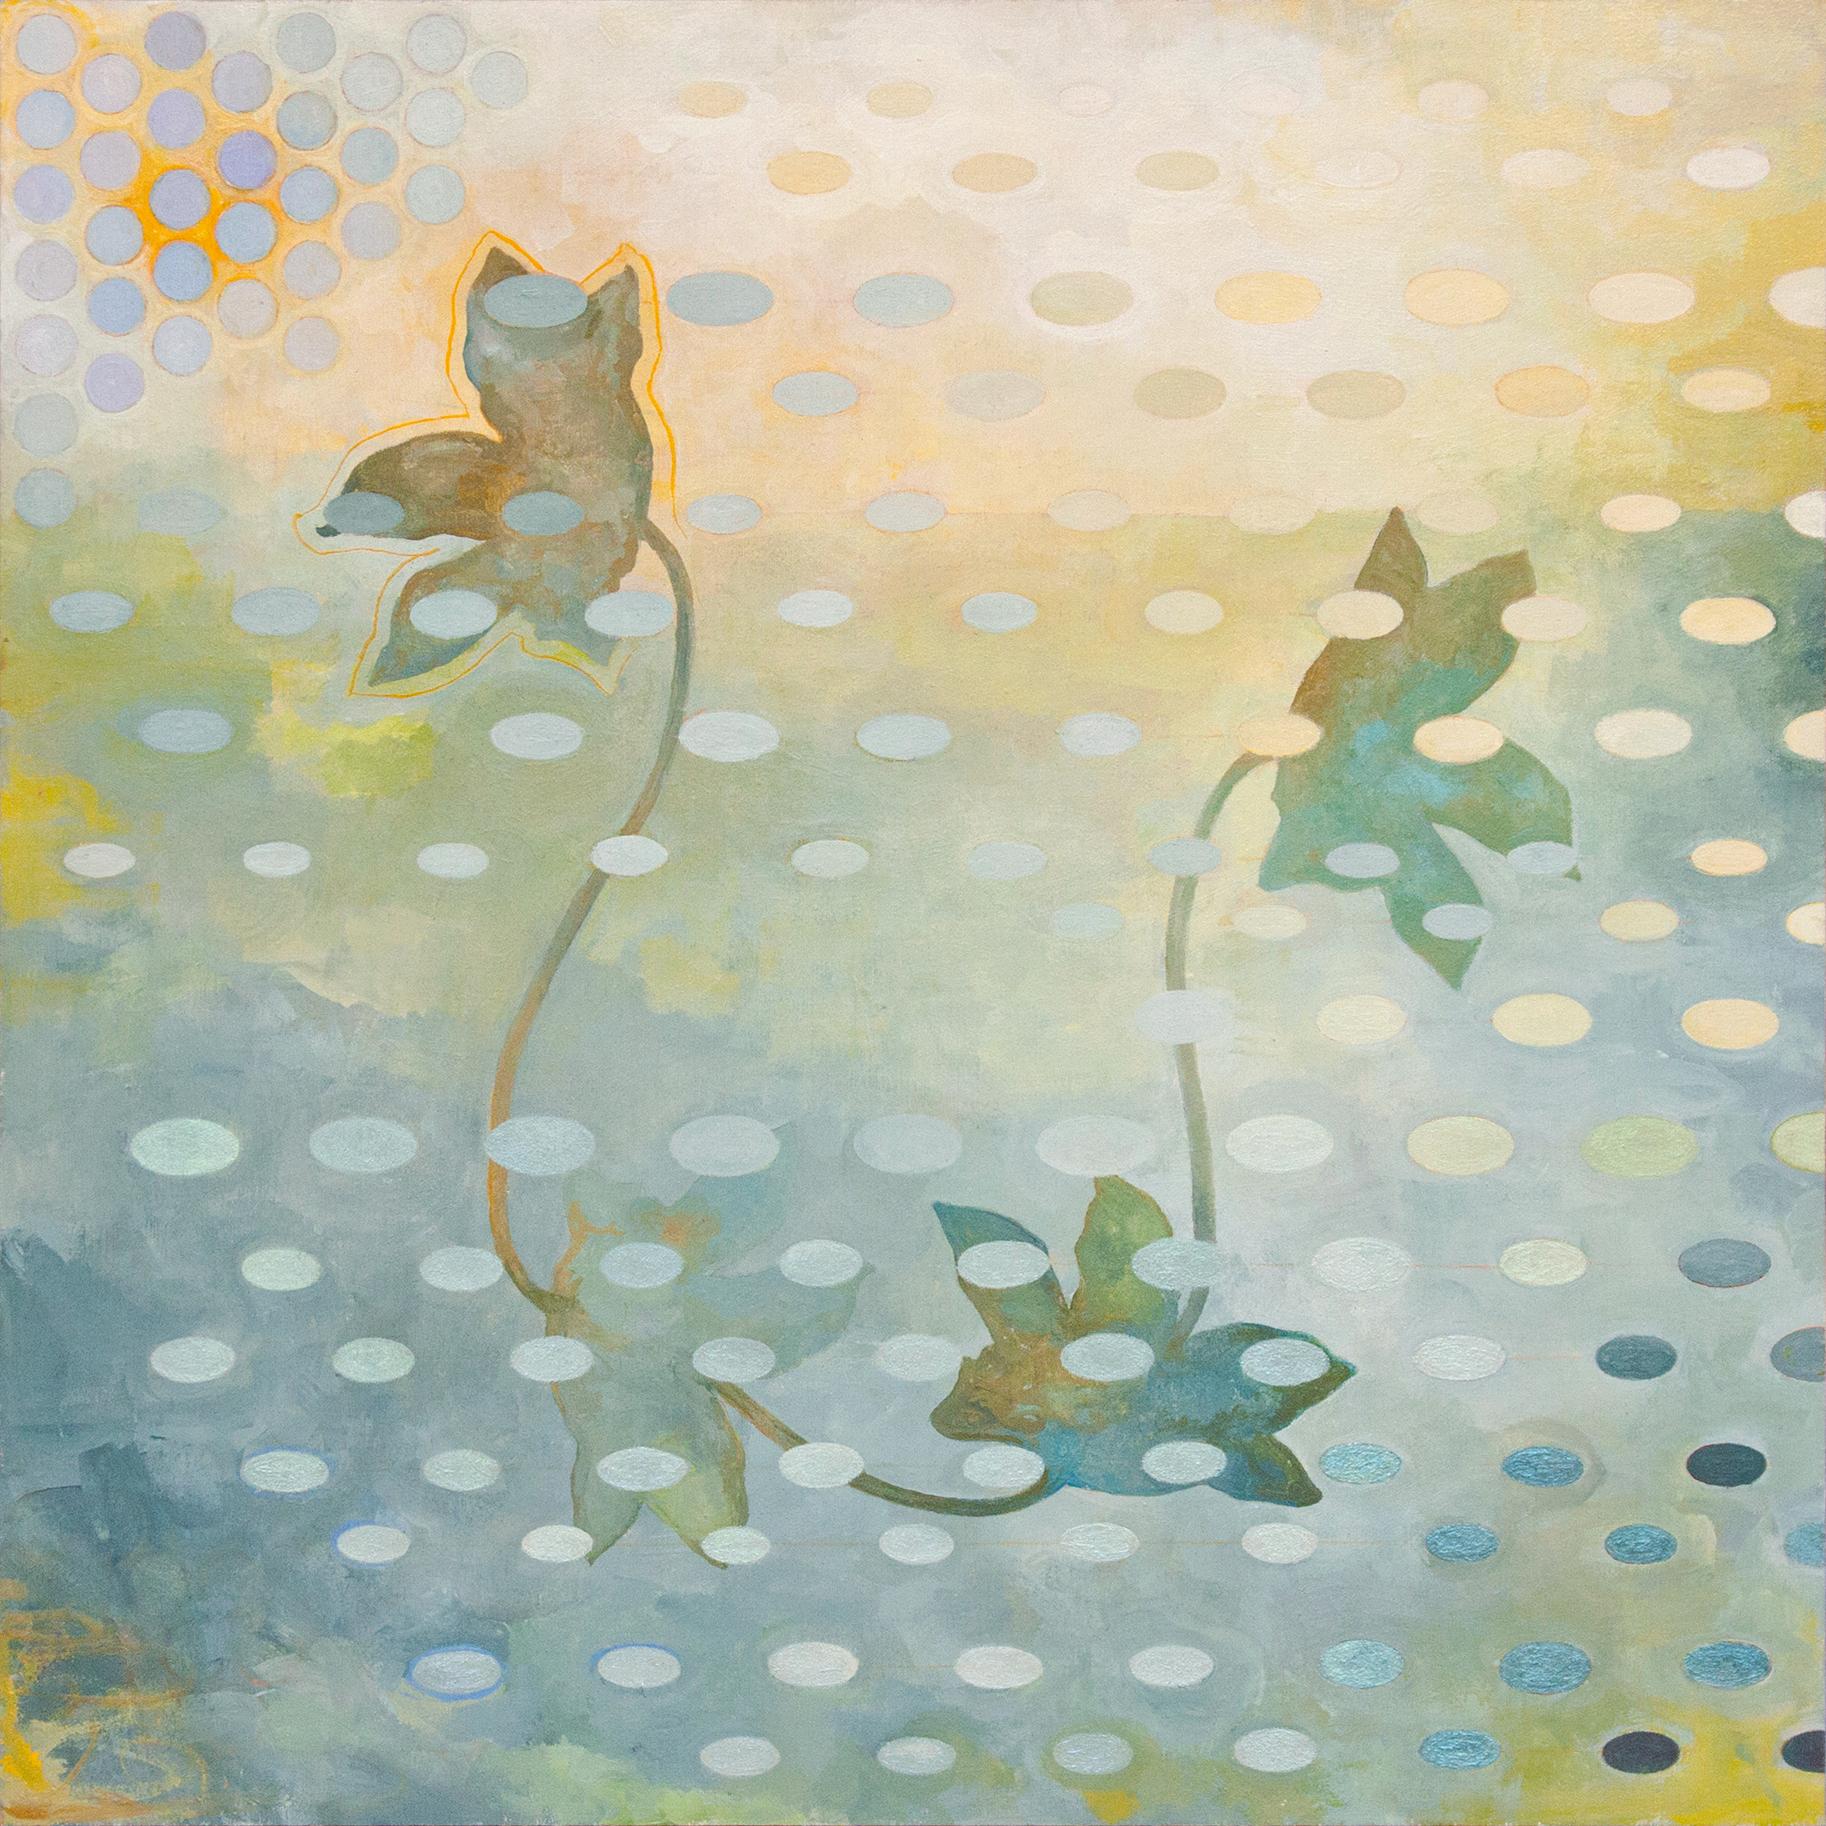 Abstract Painting Sandra Cohen - "lilies", contemporain, paysage, fleurs, bleu, jaune, peinture acrylique